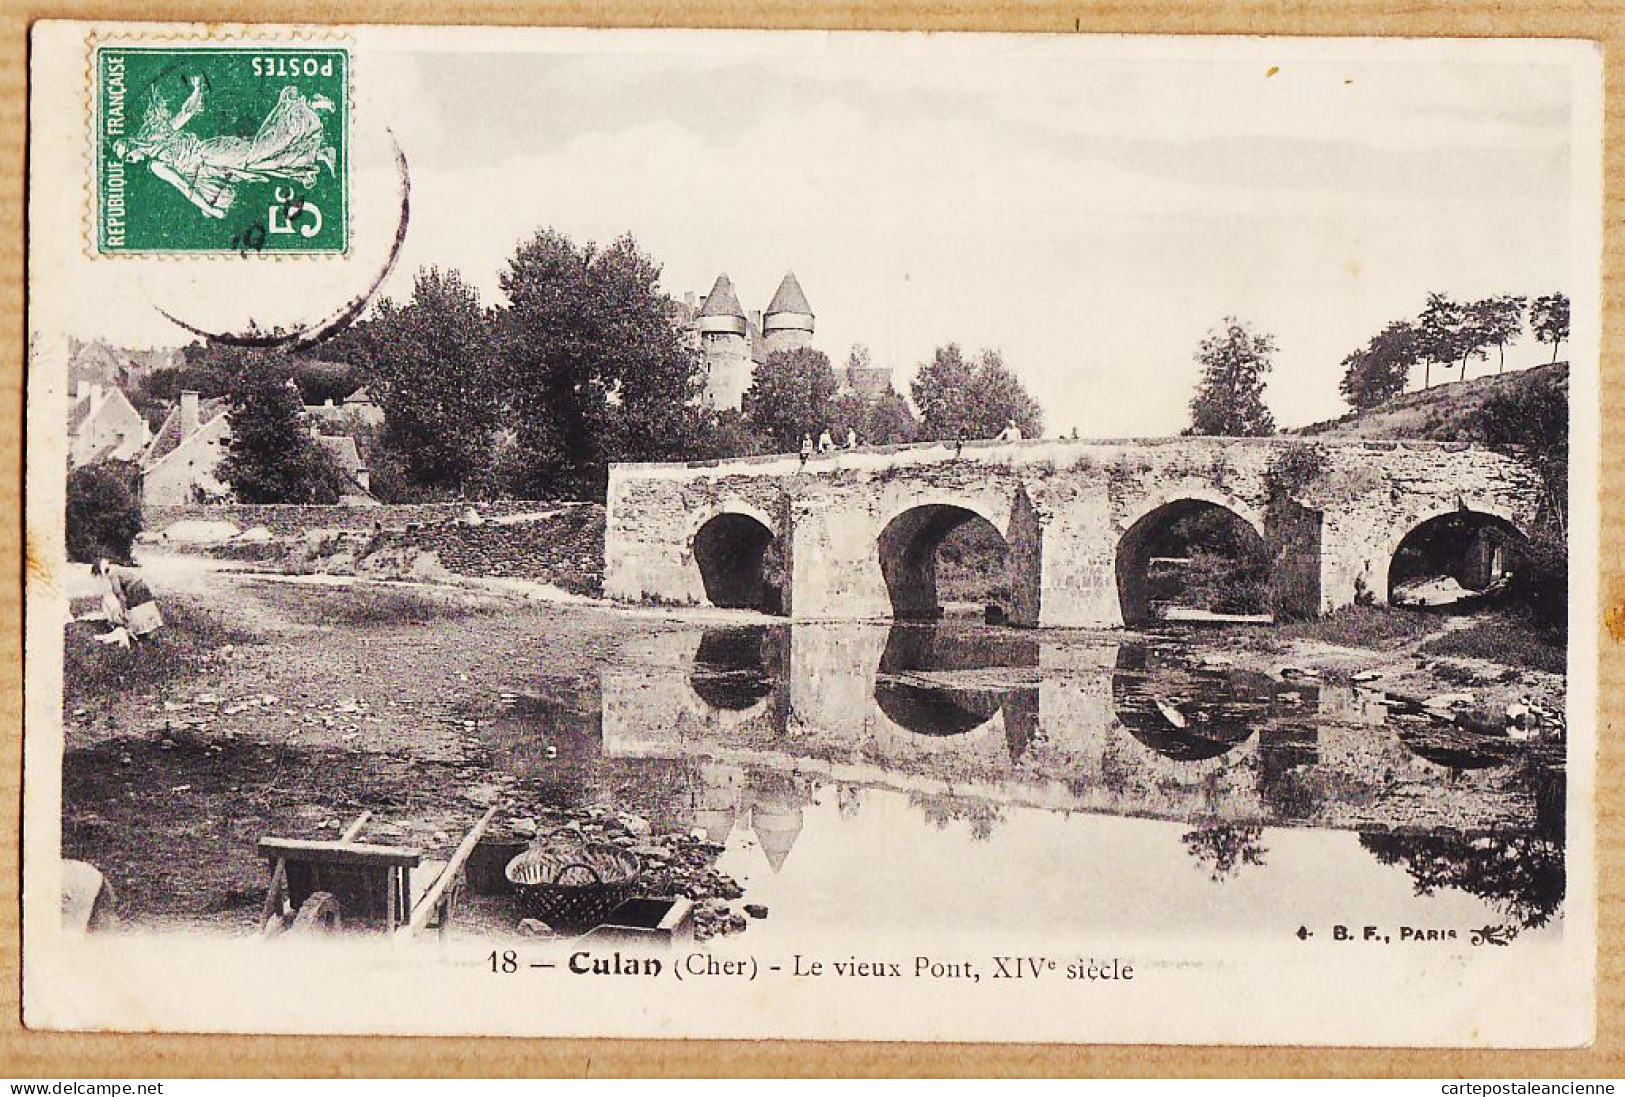 14405 / CULAN Cher Le Vieux Pont XIVe Siècle 1910s à AGAR Ateliers P.L.M 3 Rue Du Charolais Paris-B-F 18 - Culan